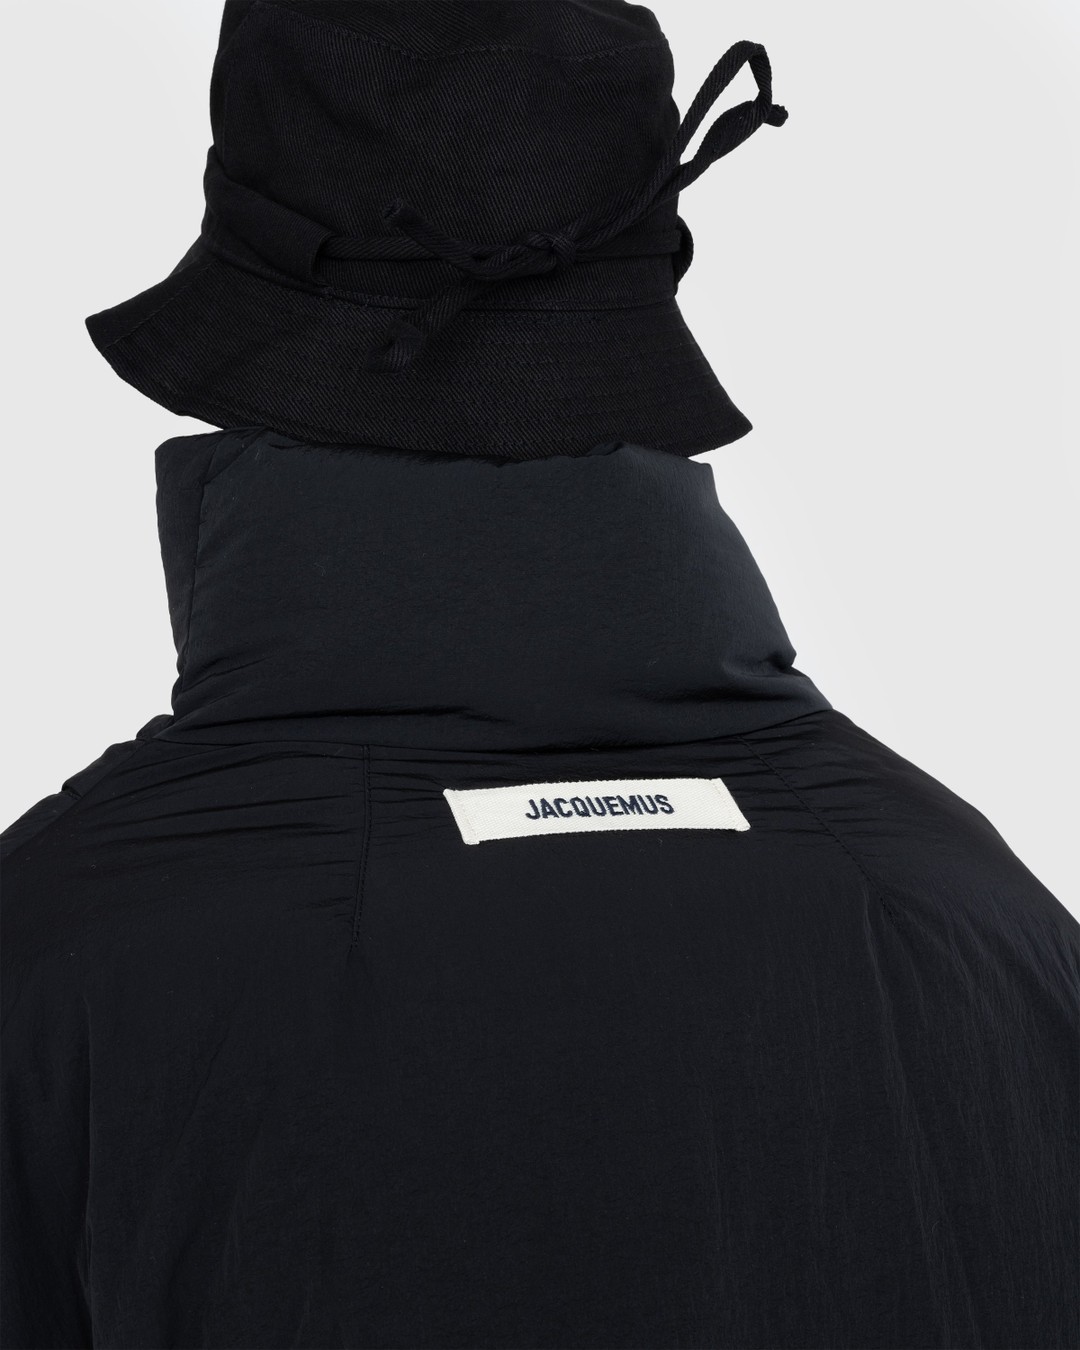 JACQUEMUS – La Doudoune Cocon Black - Outerwear - BLACK - Image 4